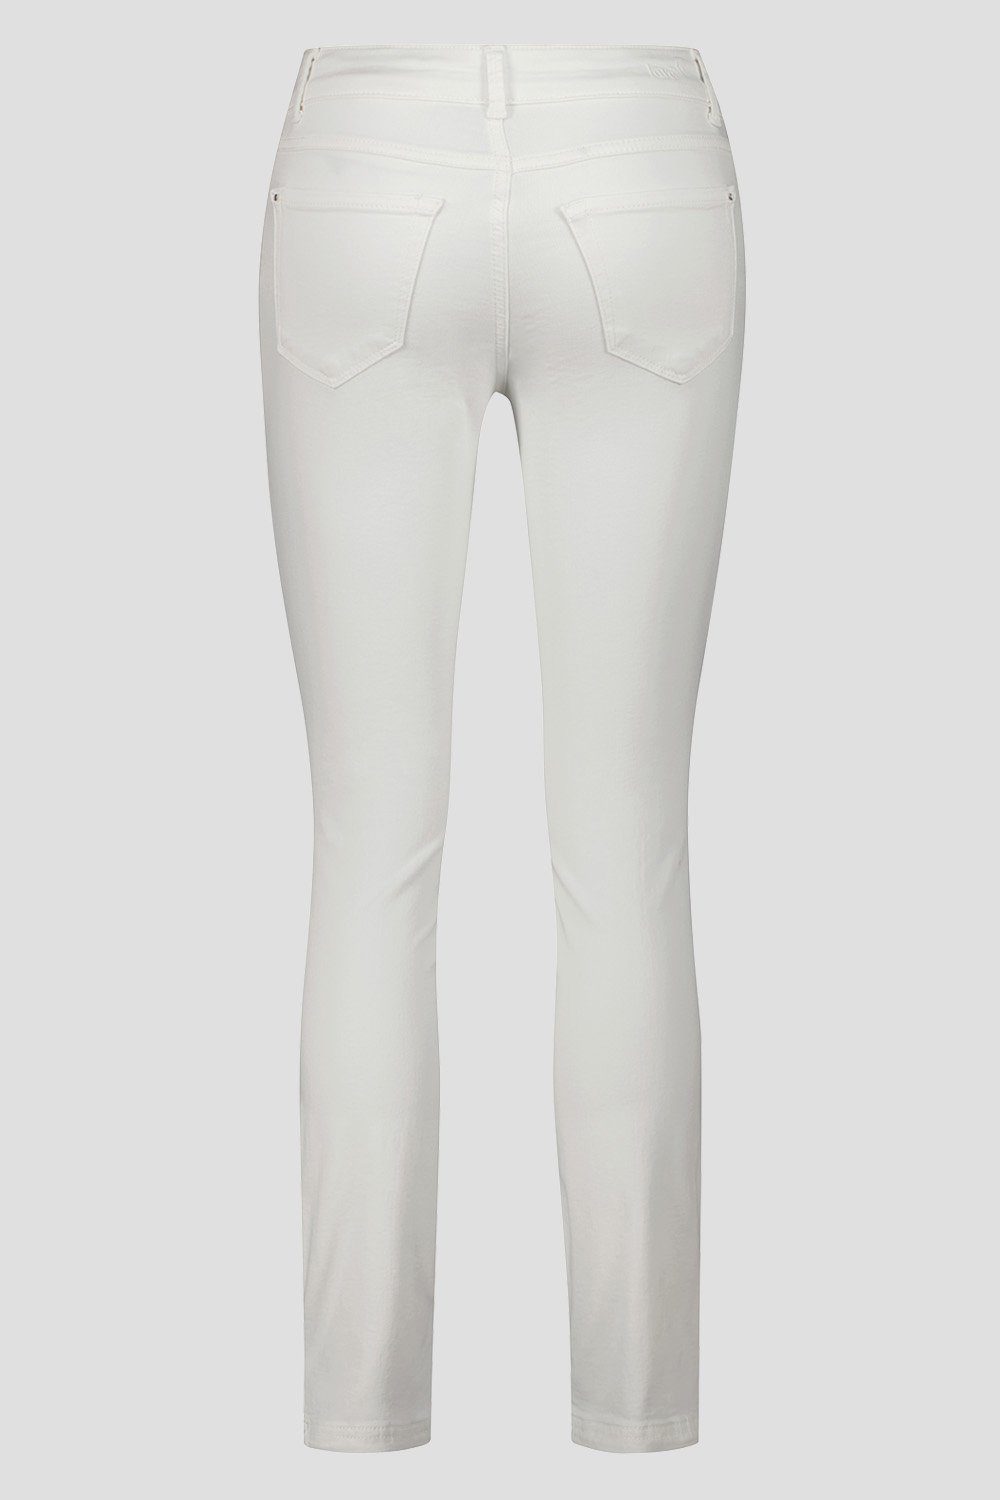 Atelier White Atelier GARDEUR VICKY743-670801 GARDEUR Denim blau Slim-fit-Jeans